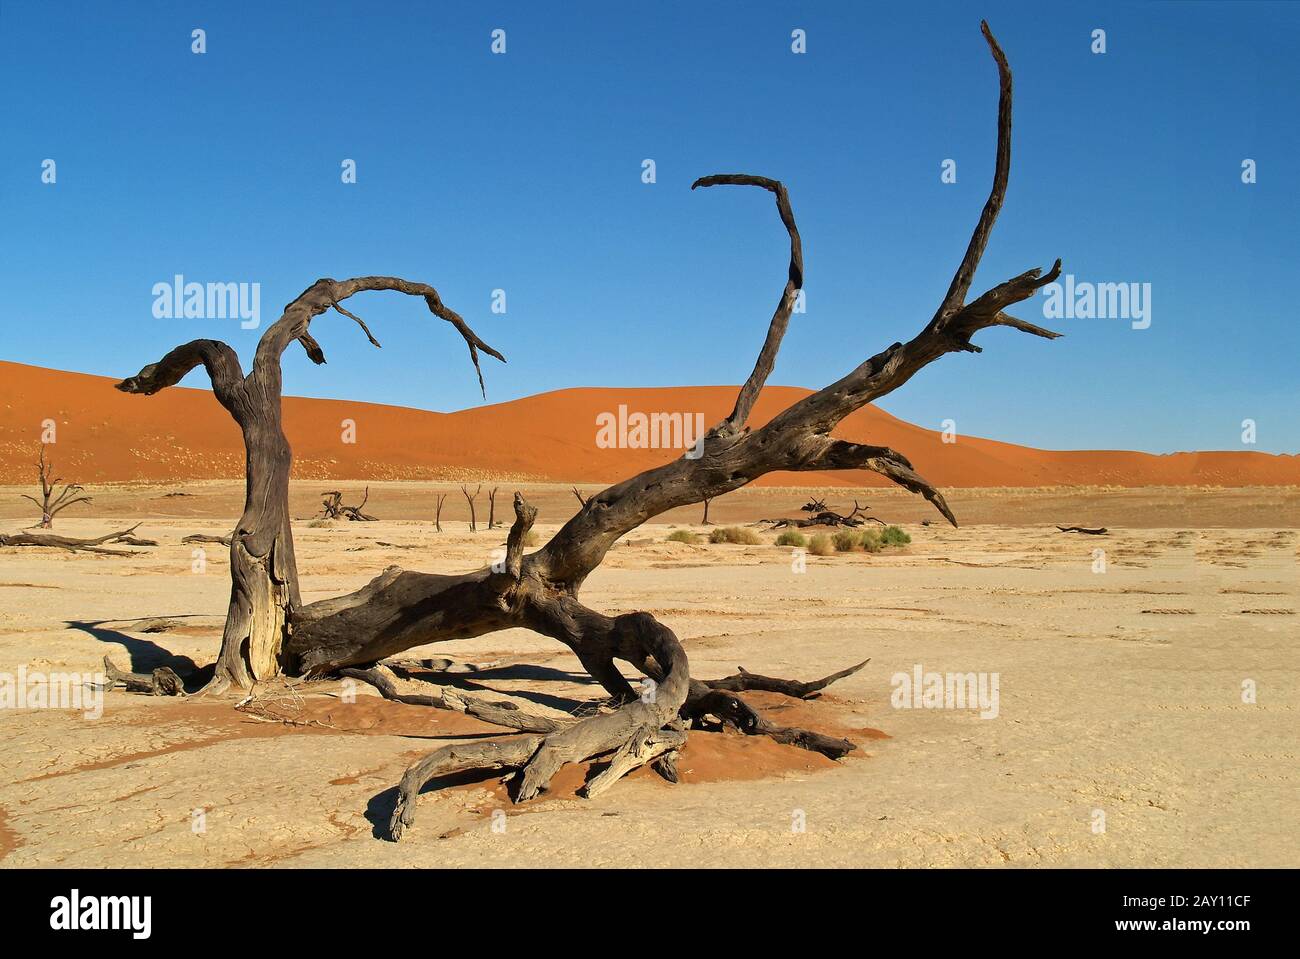 Dead Vlei, Namib Desert, Namibia Stock Photo